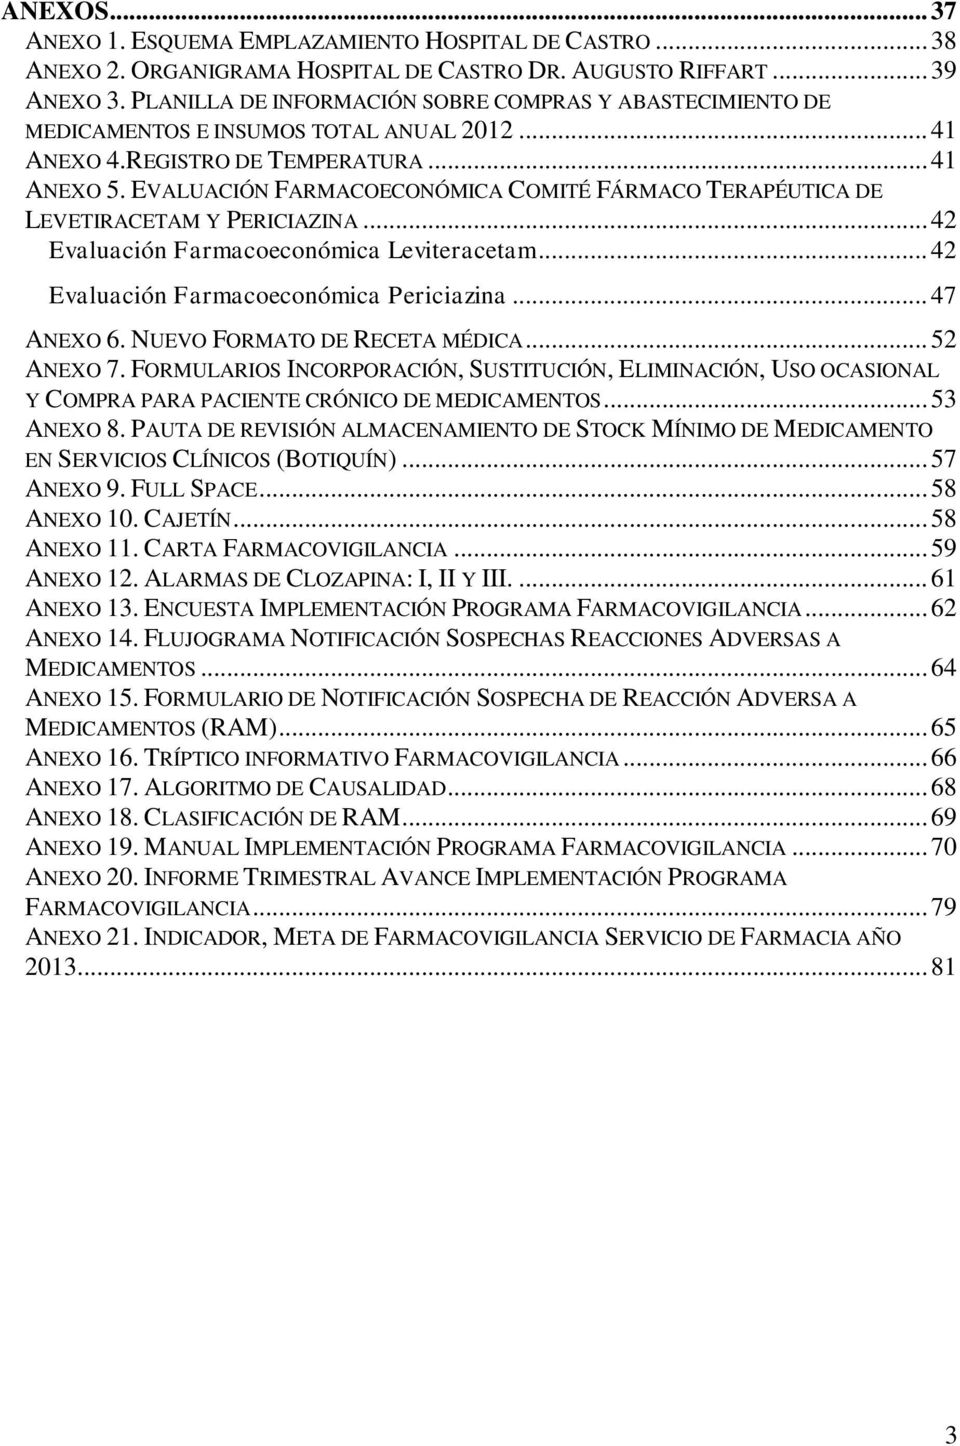 EVALUACIÓN FARMACOECONÓMICA COMITÉ FÁRMACO TERAPÉUTICA DE LEVETIRACETAM Y PERICIAZINA... 42 Evaluación Farmacoeconómica Leviteracetam... 42 Evaluación Farmacoeconómica Periciazina... 47 ANEXO 6.